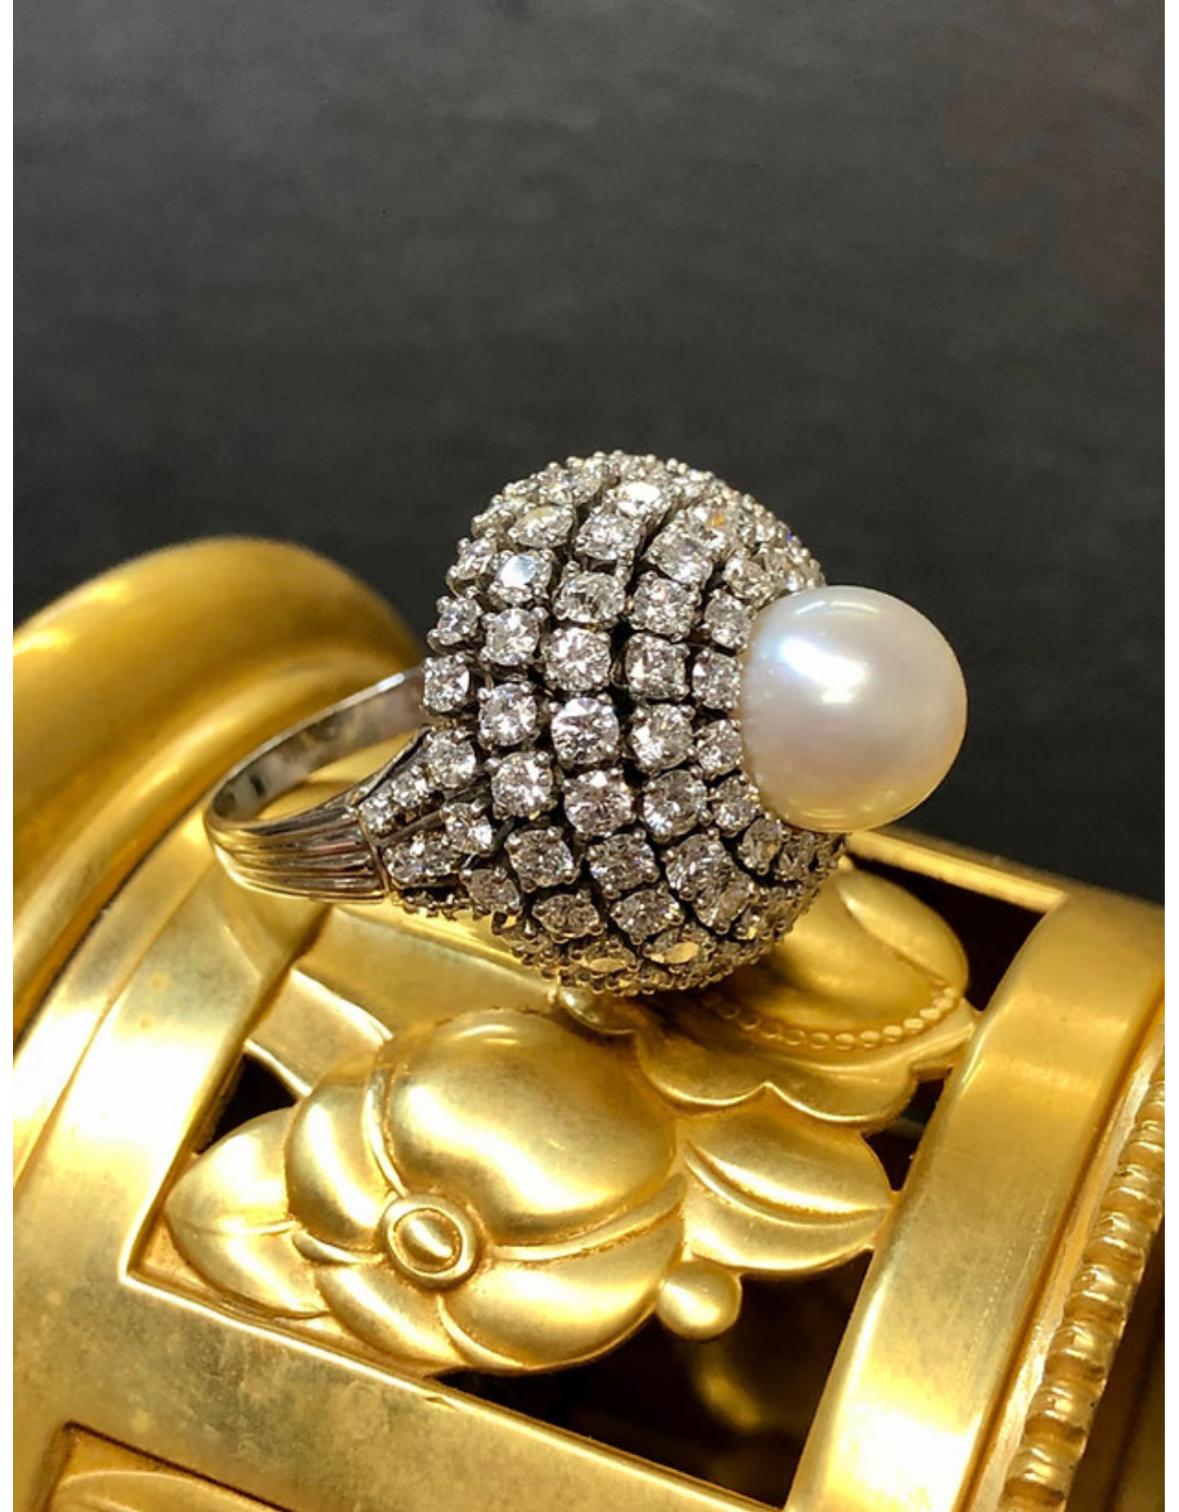 Eine umwerfende Vintage 1950's Kuppel Ring in Platin getan und mit etwa 6,70cttw in G-J Farbe Vs1-2 Klarheit runden Diamanten und zentriert durch eine 10mm Perle gesetzt.

Bedingung
Alle Steine sind sicher und in sehr tragbarem